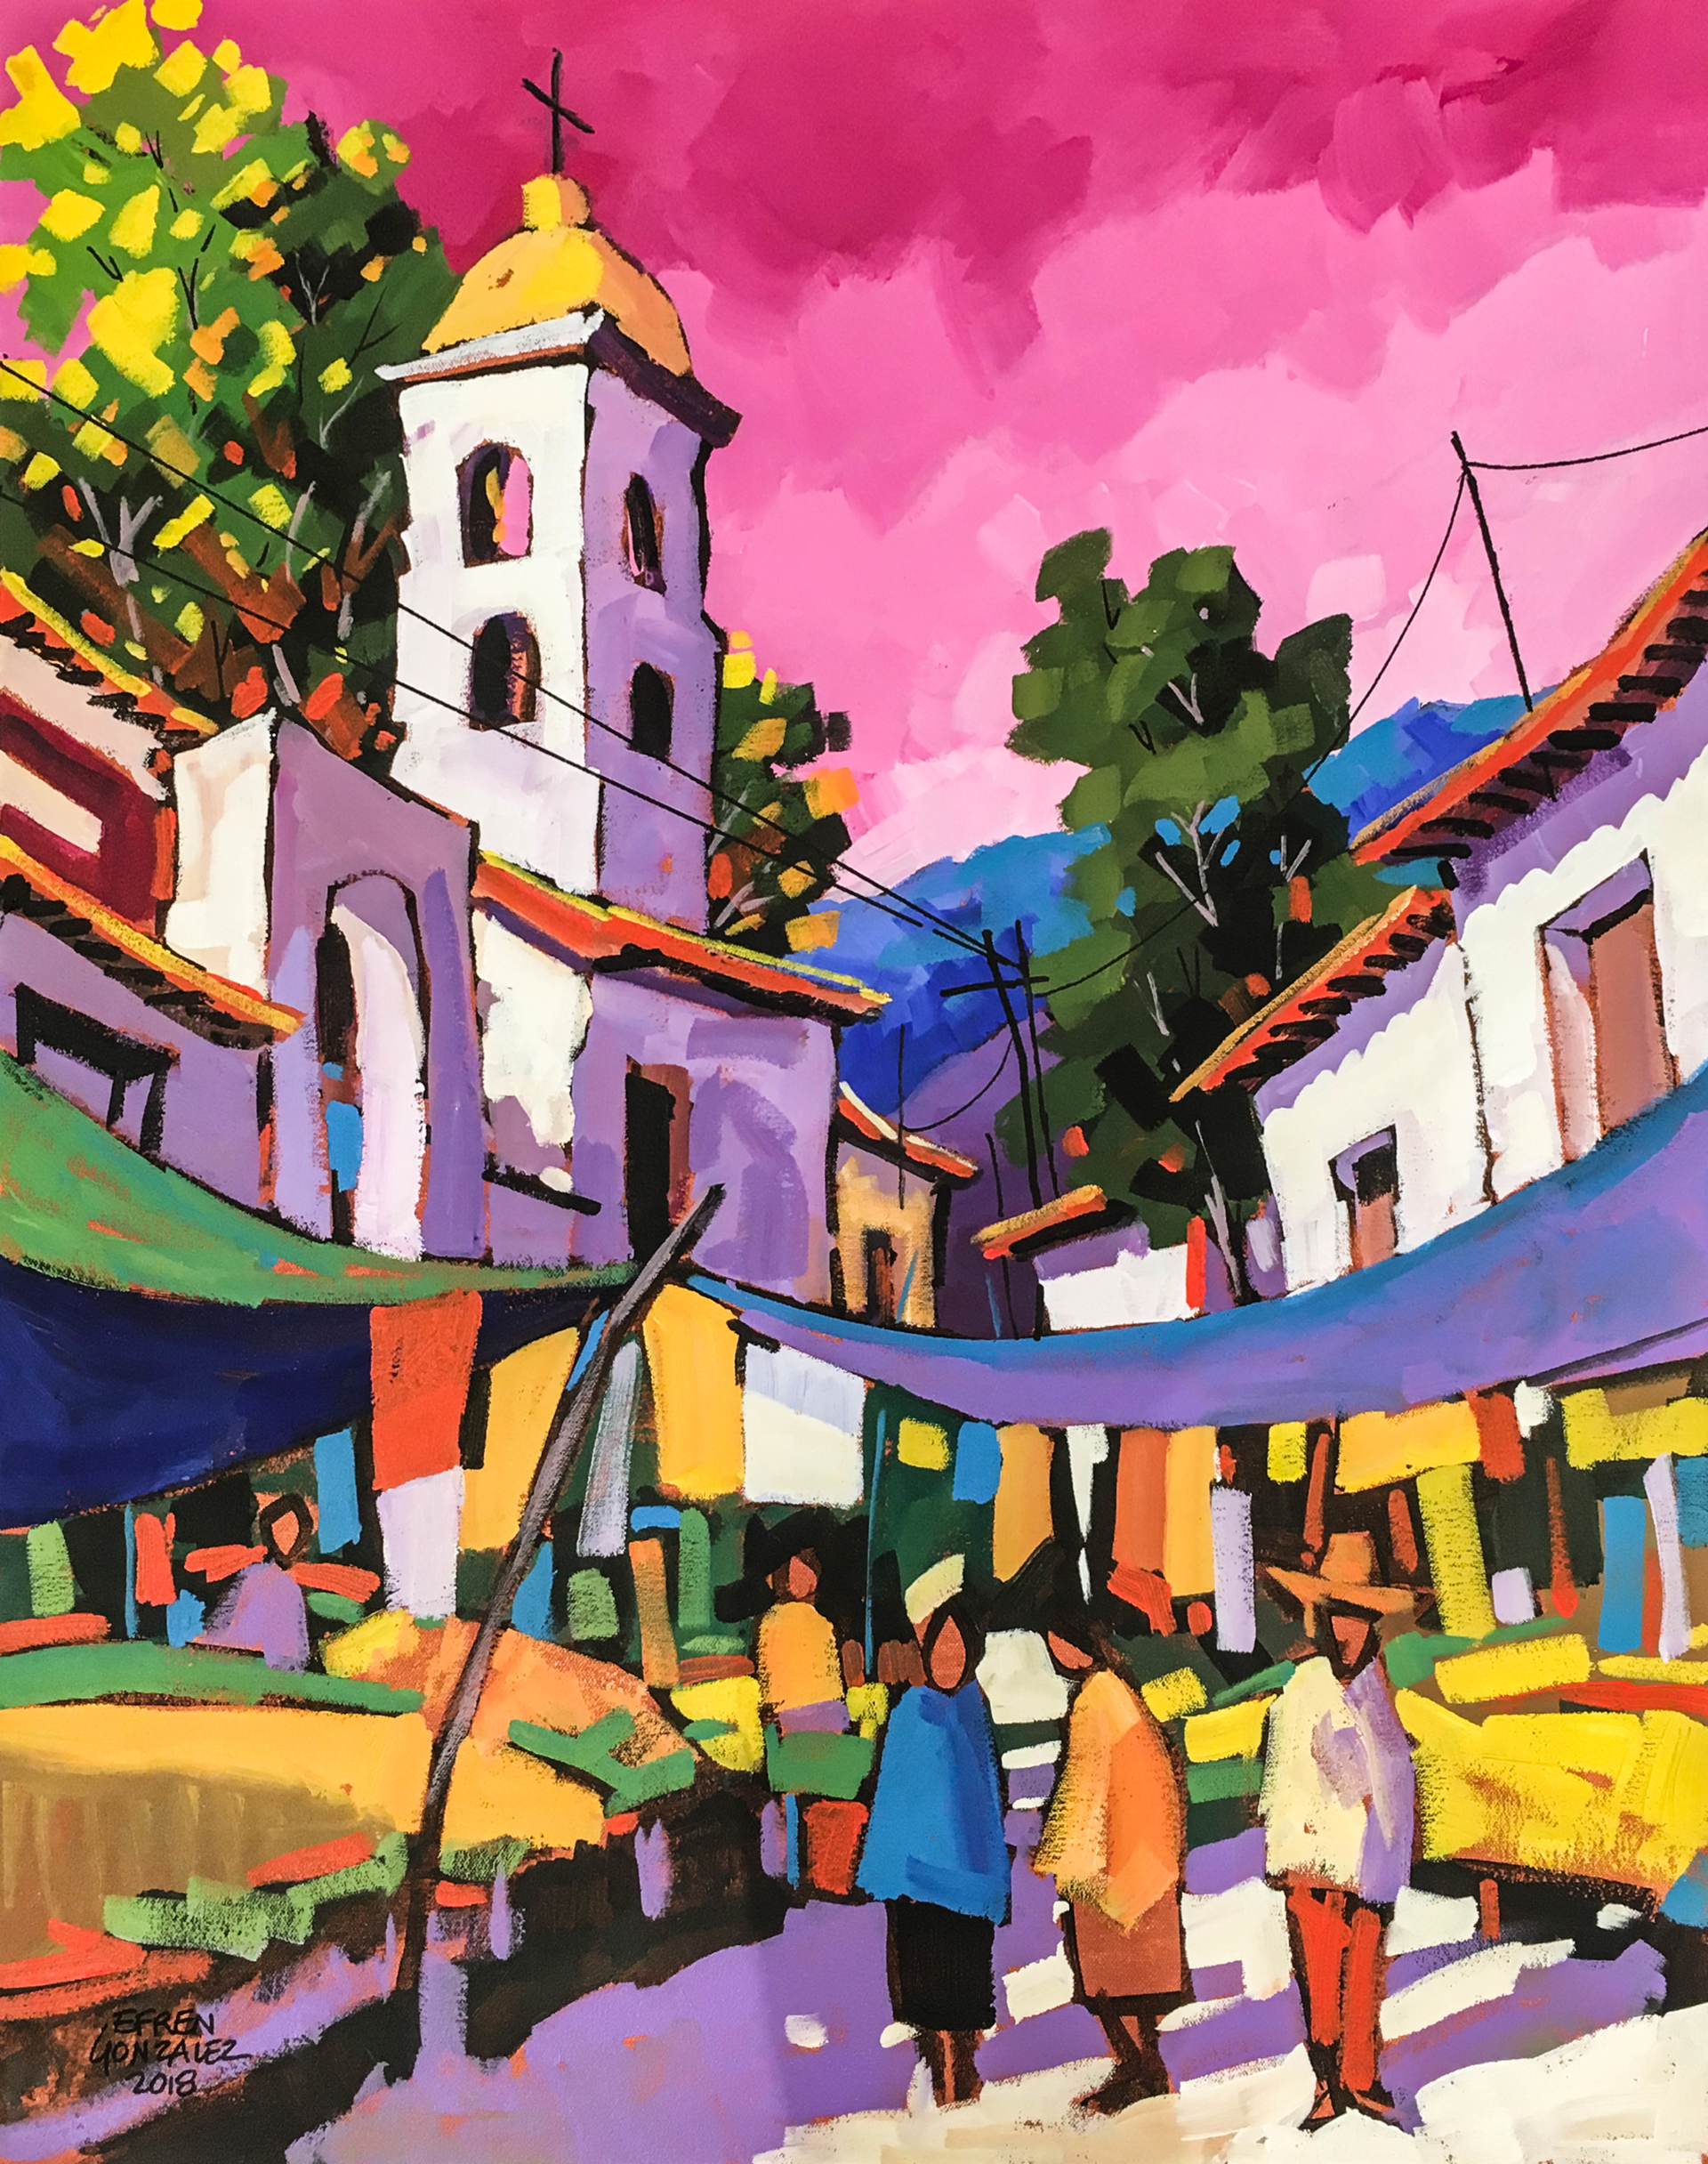 La Iglesia with Pink Sky by Efren Gonzalez